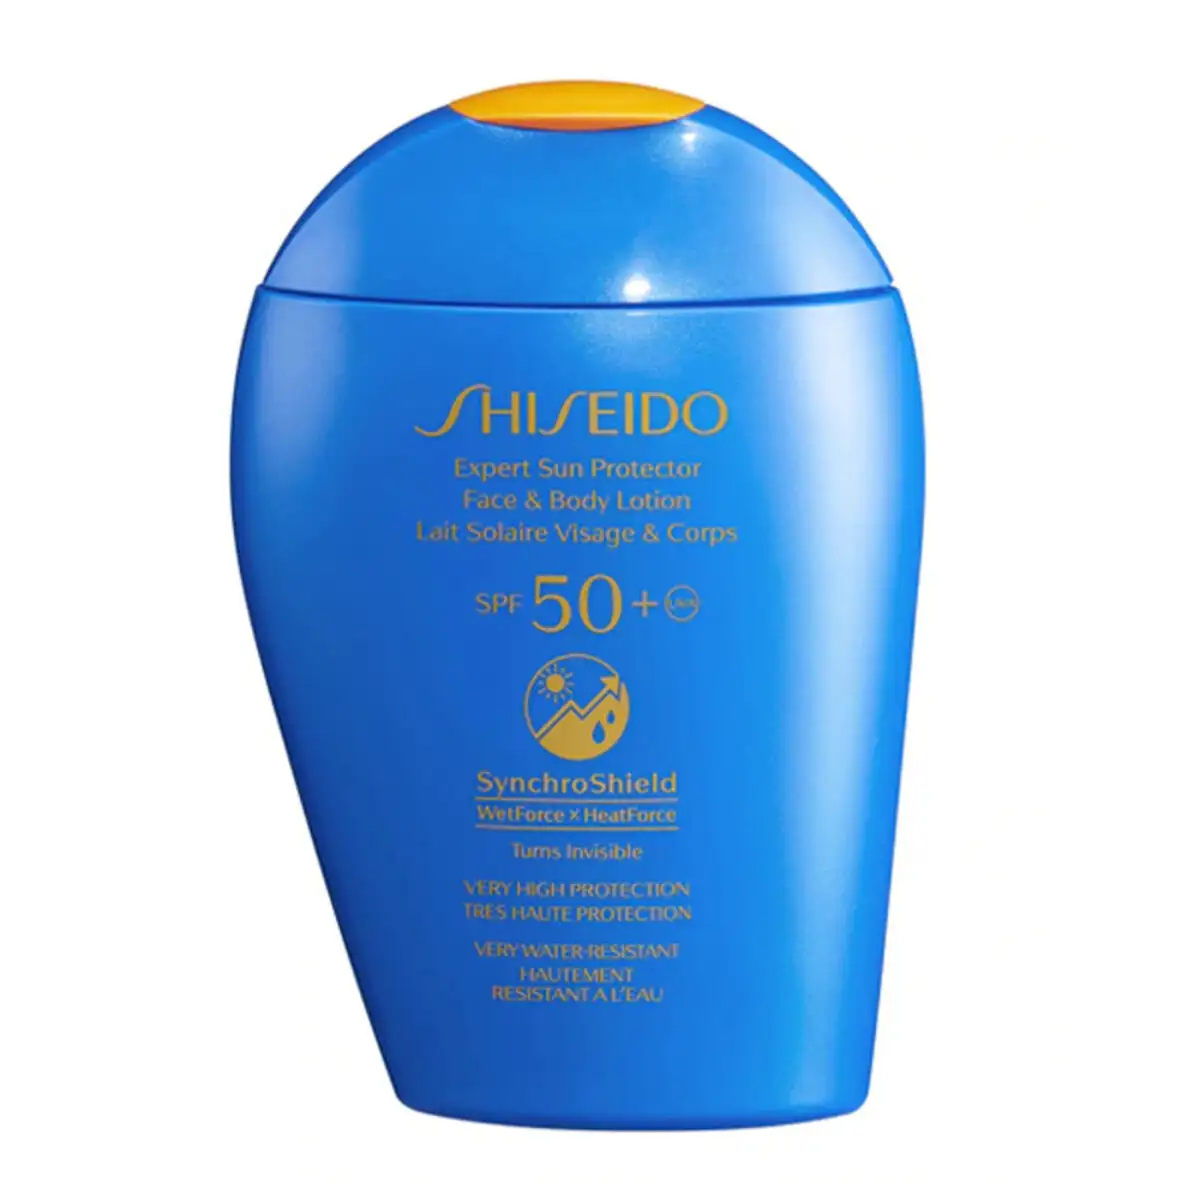 Sun block expert soleil shiseido spf 50 150 ml 50 150 ml_9176. DIAYTAR SENEGAL - Là où Chaque Achat a du Sens. Explorez notre gamme et choisissez des produits qui racontent une histoire, du traditionnel au contemporain.